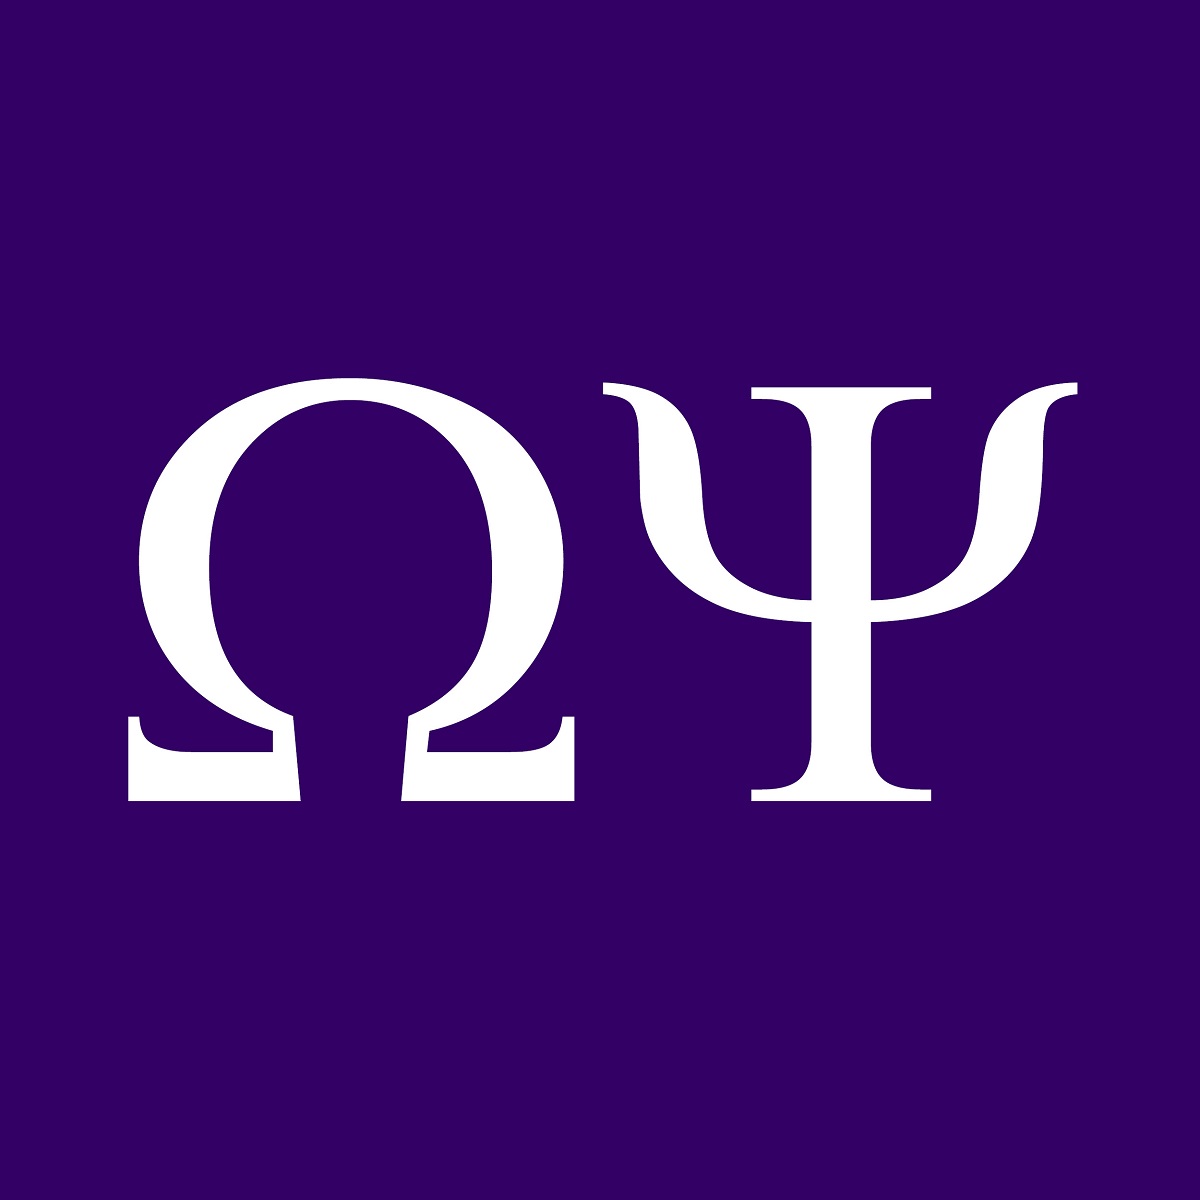 Greek Letters for Omega Psi